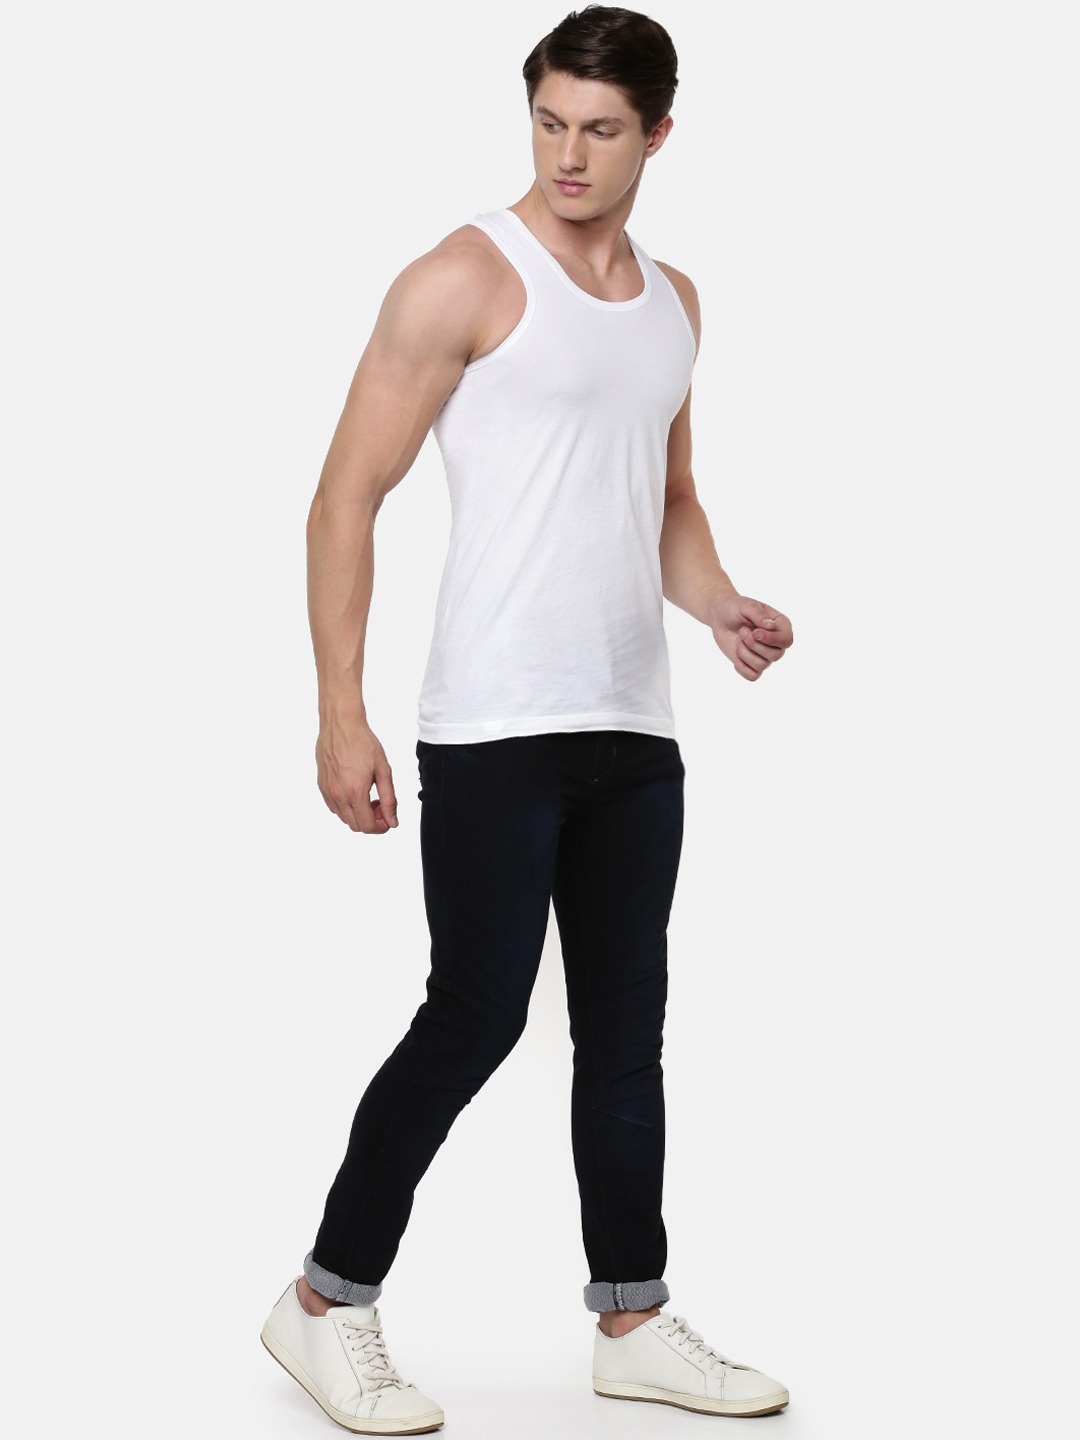 Clothing Innerwear Vests | RAMRAJ COTTON Men Pack Of 5 White Solid Pure Cotton Innerwear Vests - EK54645